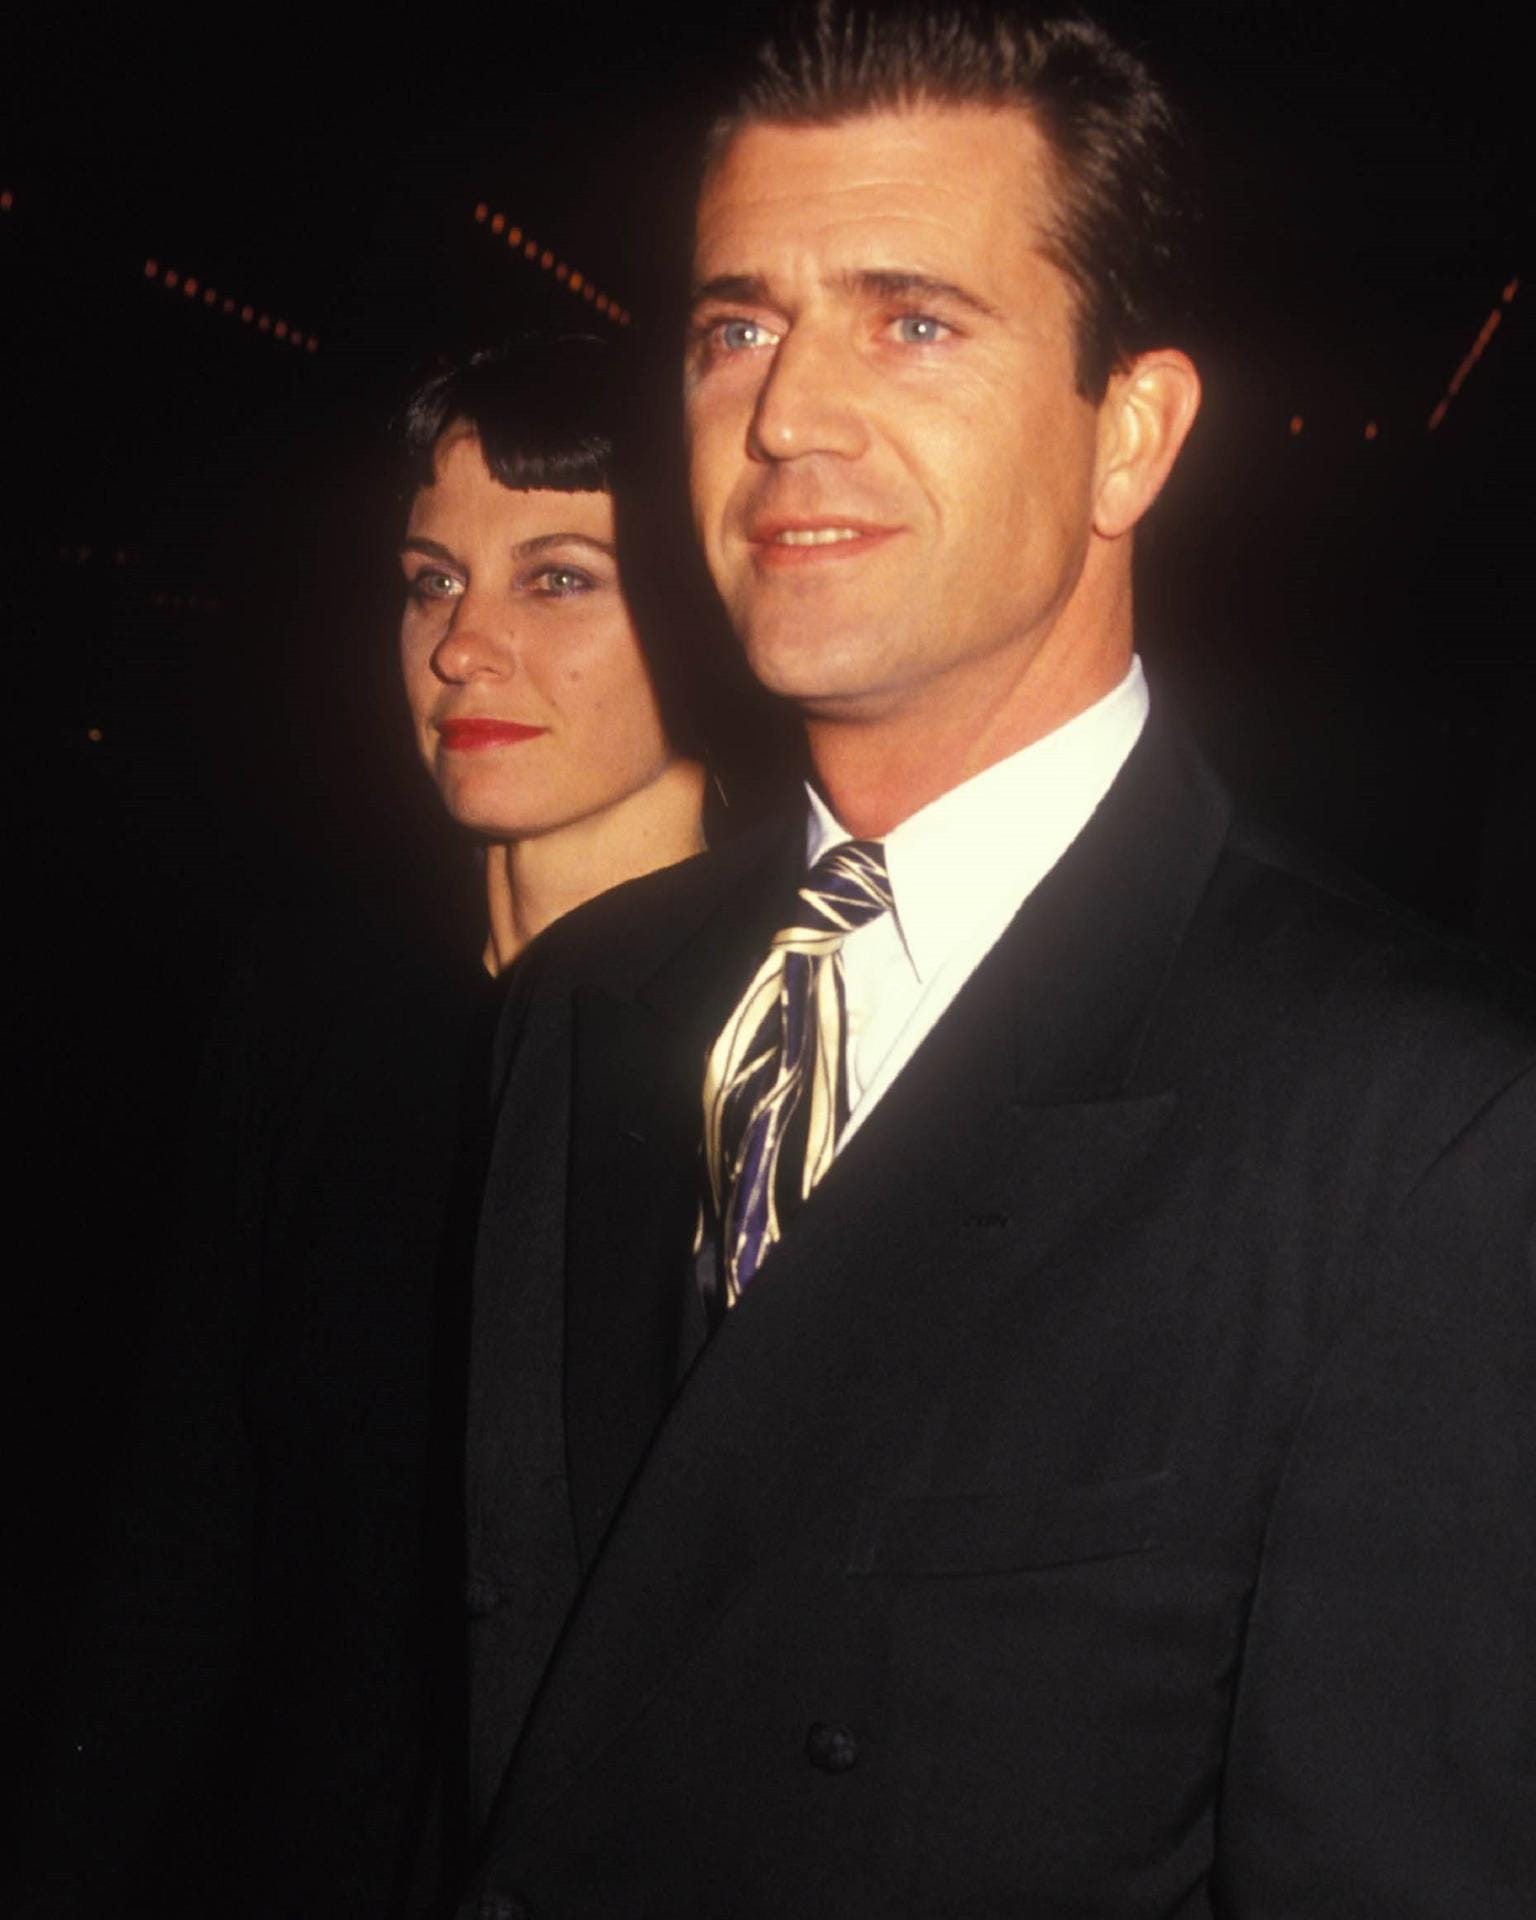 Robyn und Mel Gibson: Das Paar trennte sich 2011 nach 31 Jahren Ehe. Das kostete den Schauspieler damals die Hälfte seines Vermögens – 373 Millionen Euro. Zudem muss er bis an sein Lebensende die Hälfte all seiner künftigen Filmgagen an seine Ex-Frau abgeben.